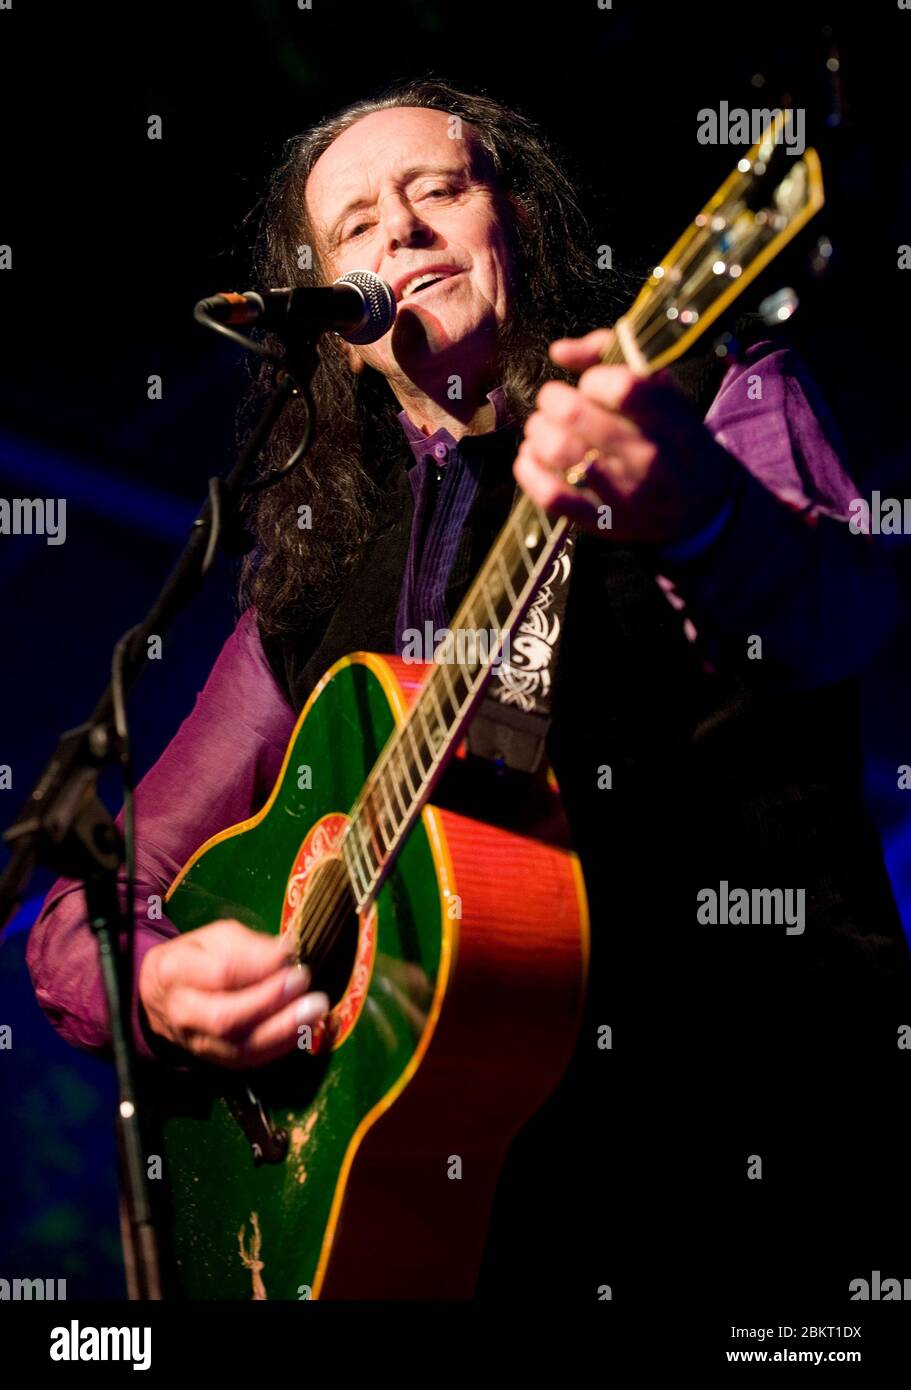 Der britische Sänger, Songwriter und Gitarrist Donovan auf der Bühne beim Moseley Folk Festival am 4. September 2010. Bild von Simon Hadley Stockfoto